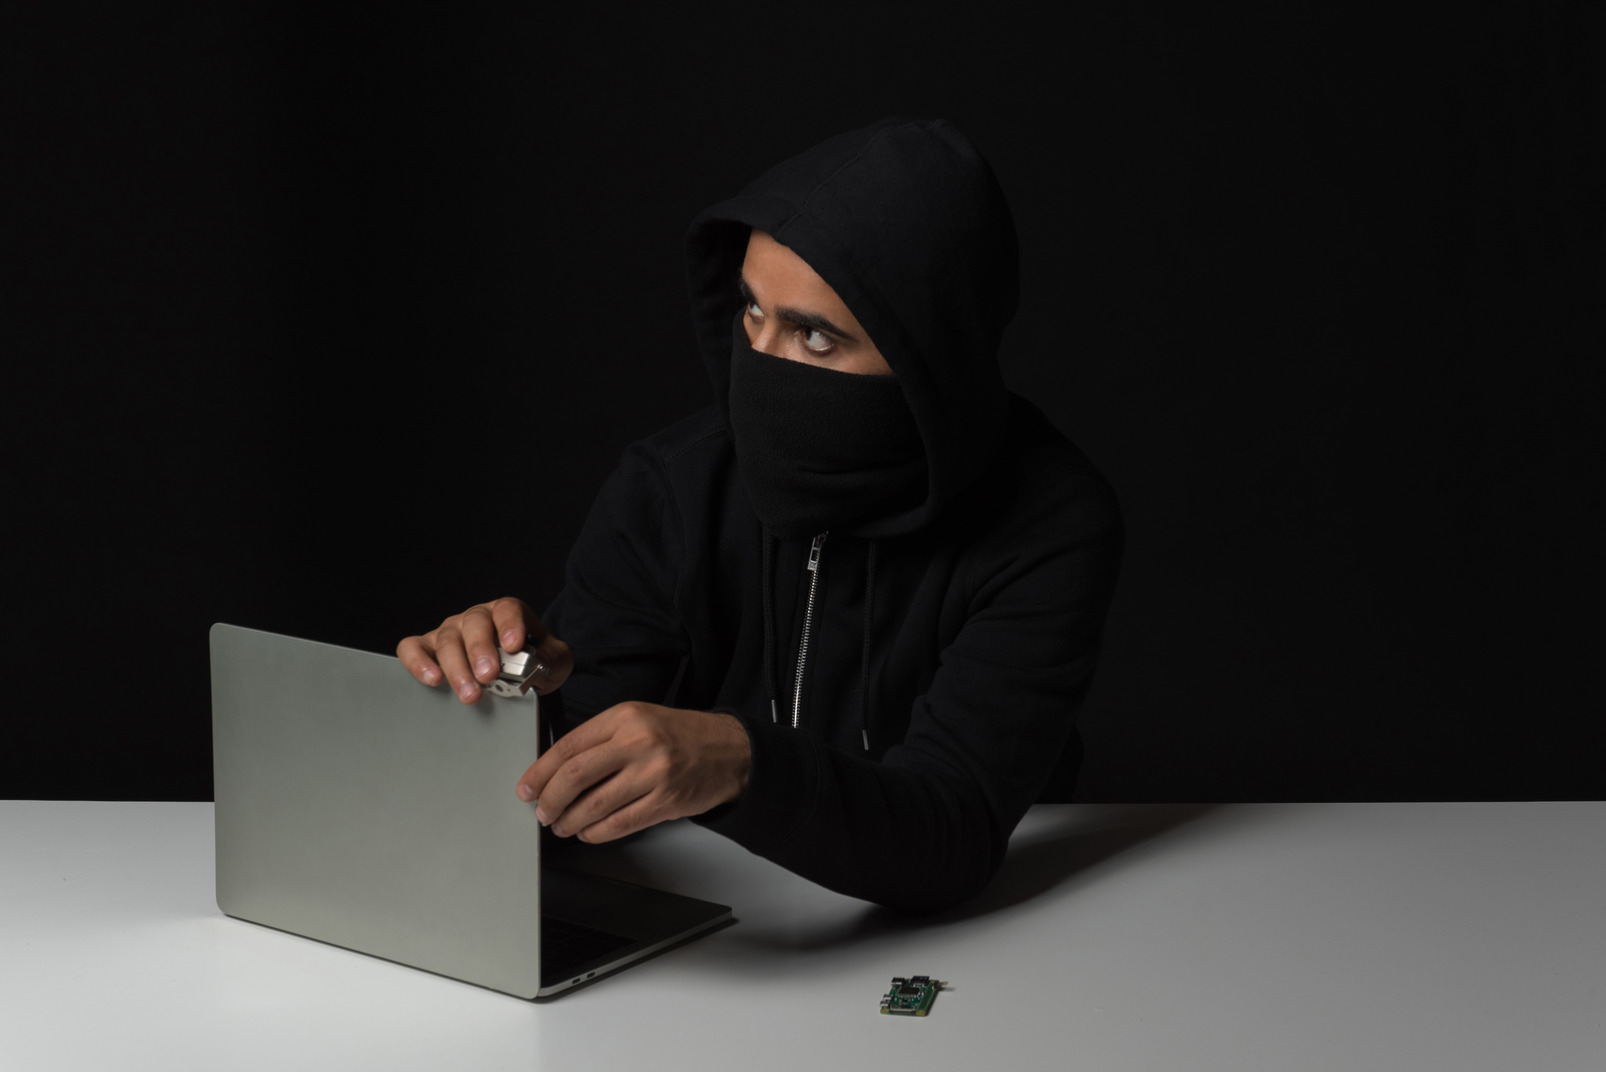 Hacker guy removing laptop in the dark